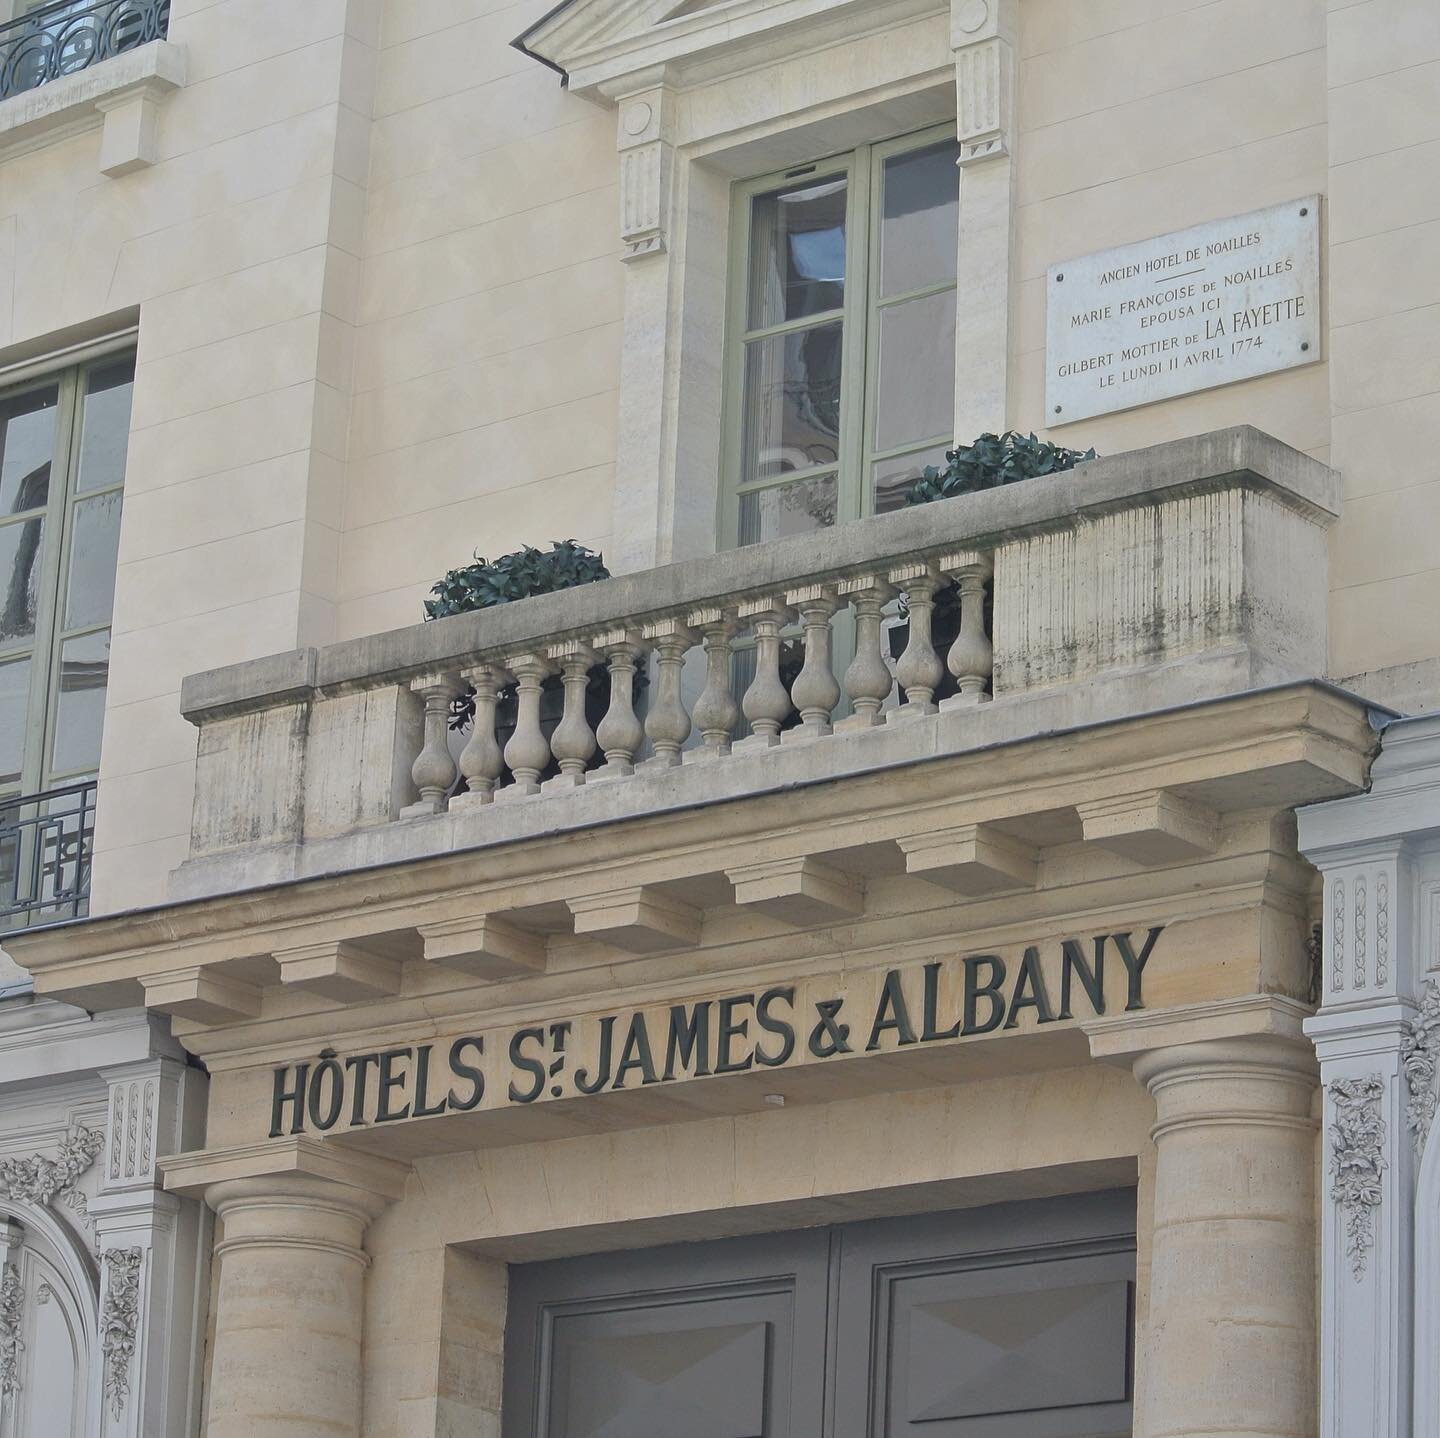 Hotel-St-James-Lafayette-Plaque-Parisology.jpg